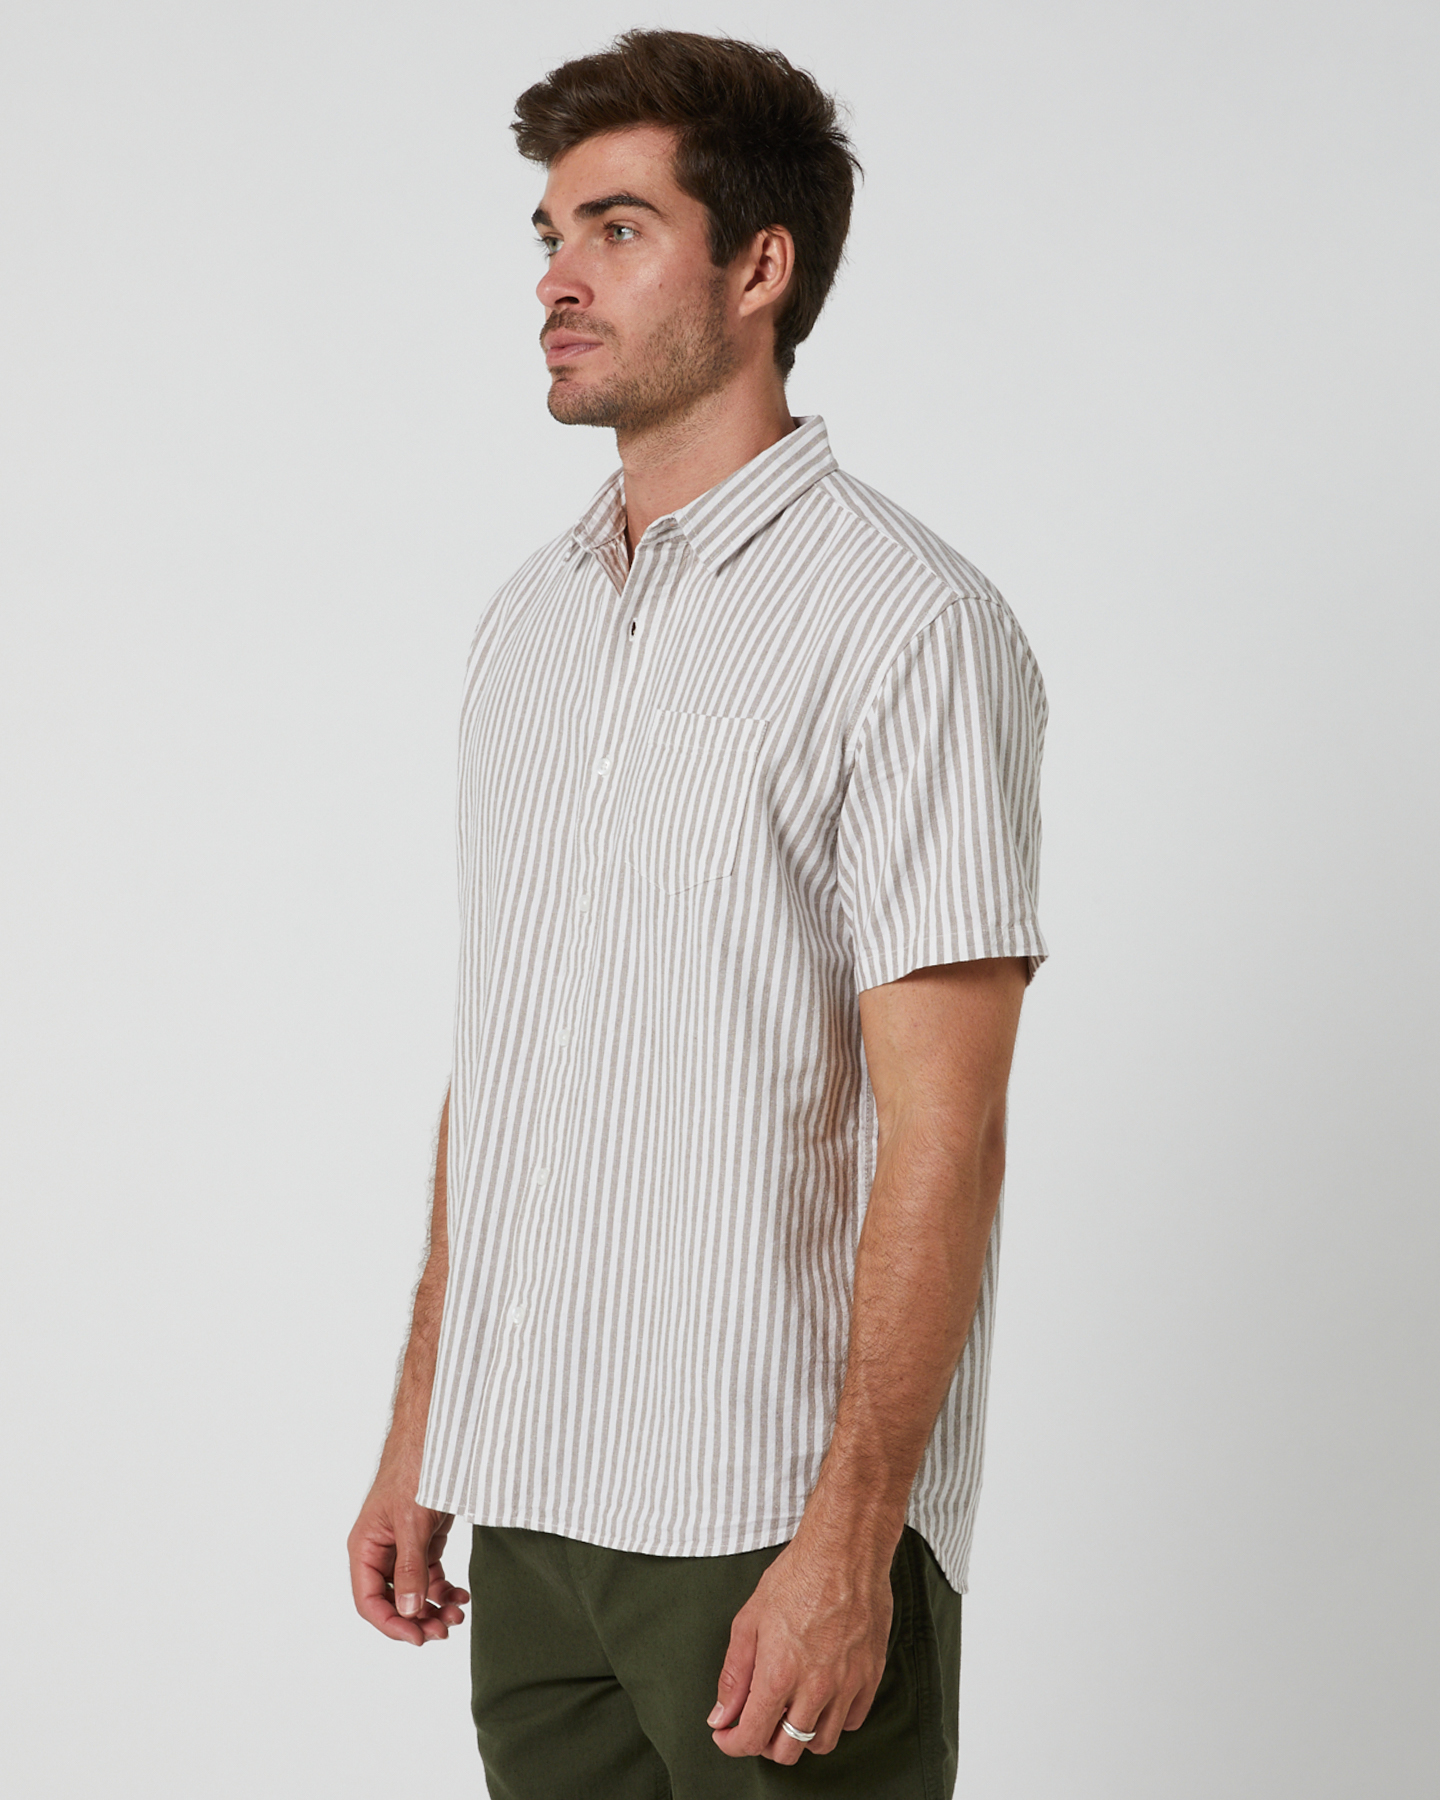 Silent Theory Striped Linen Shirt - Tan | SurfStitch